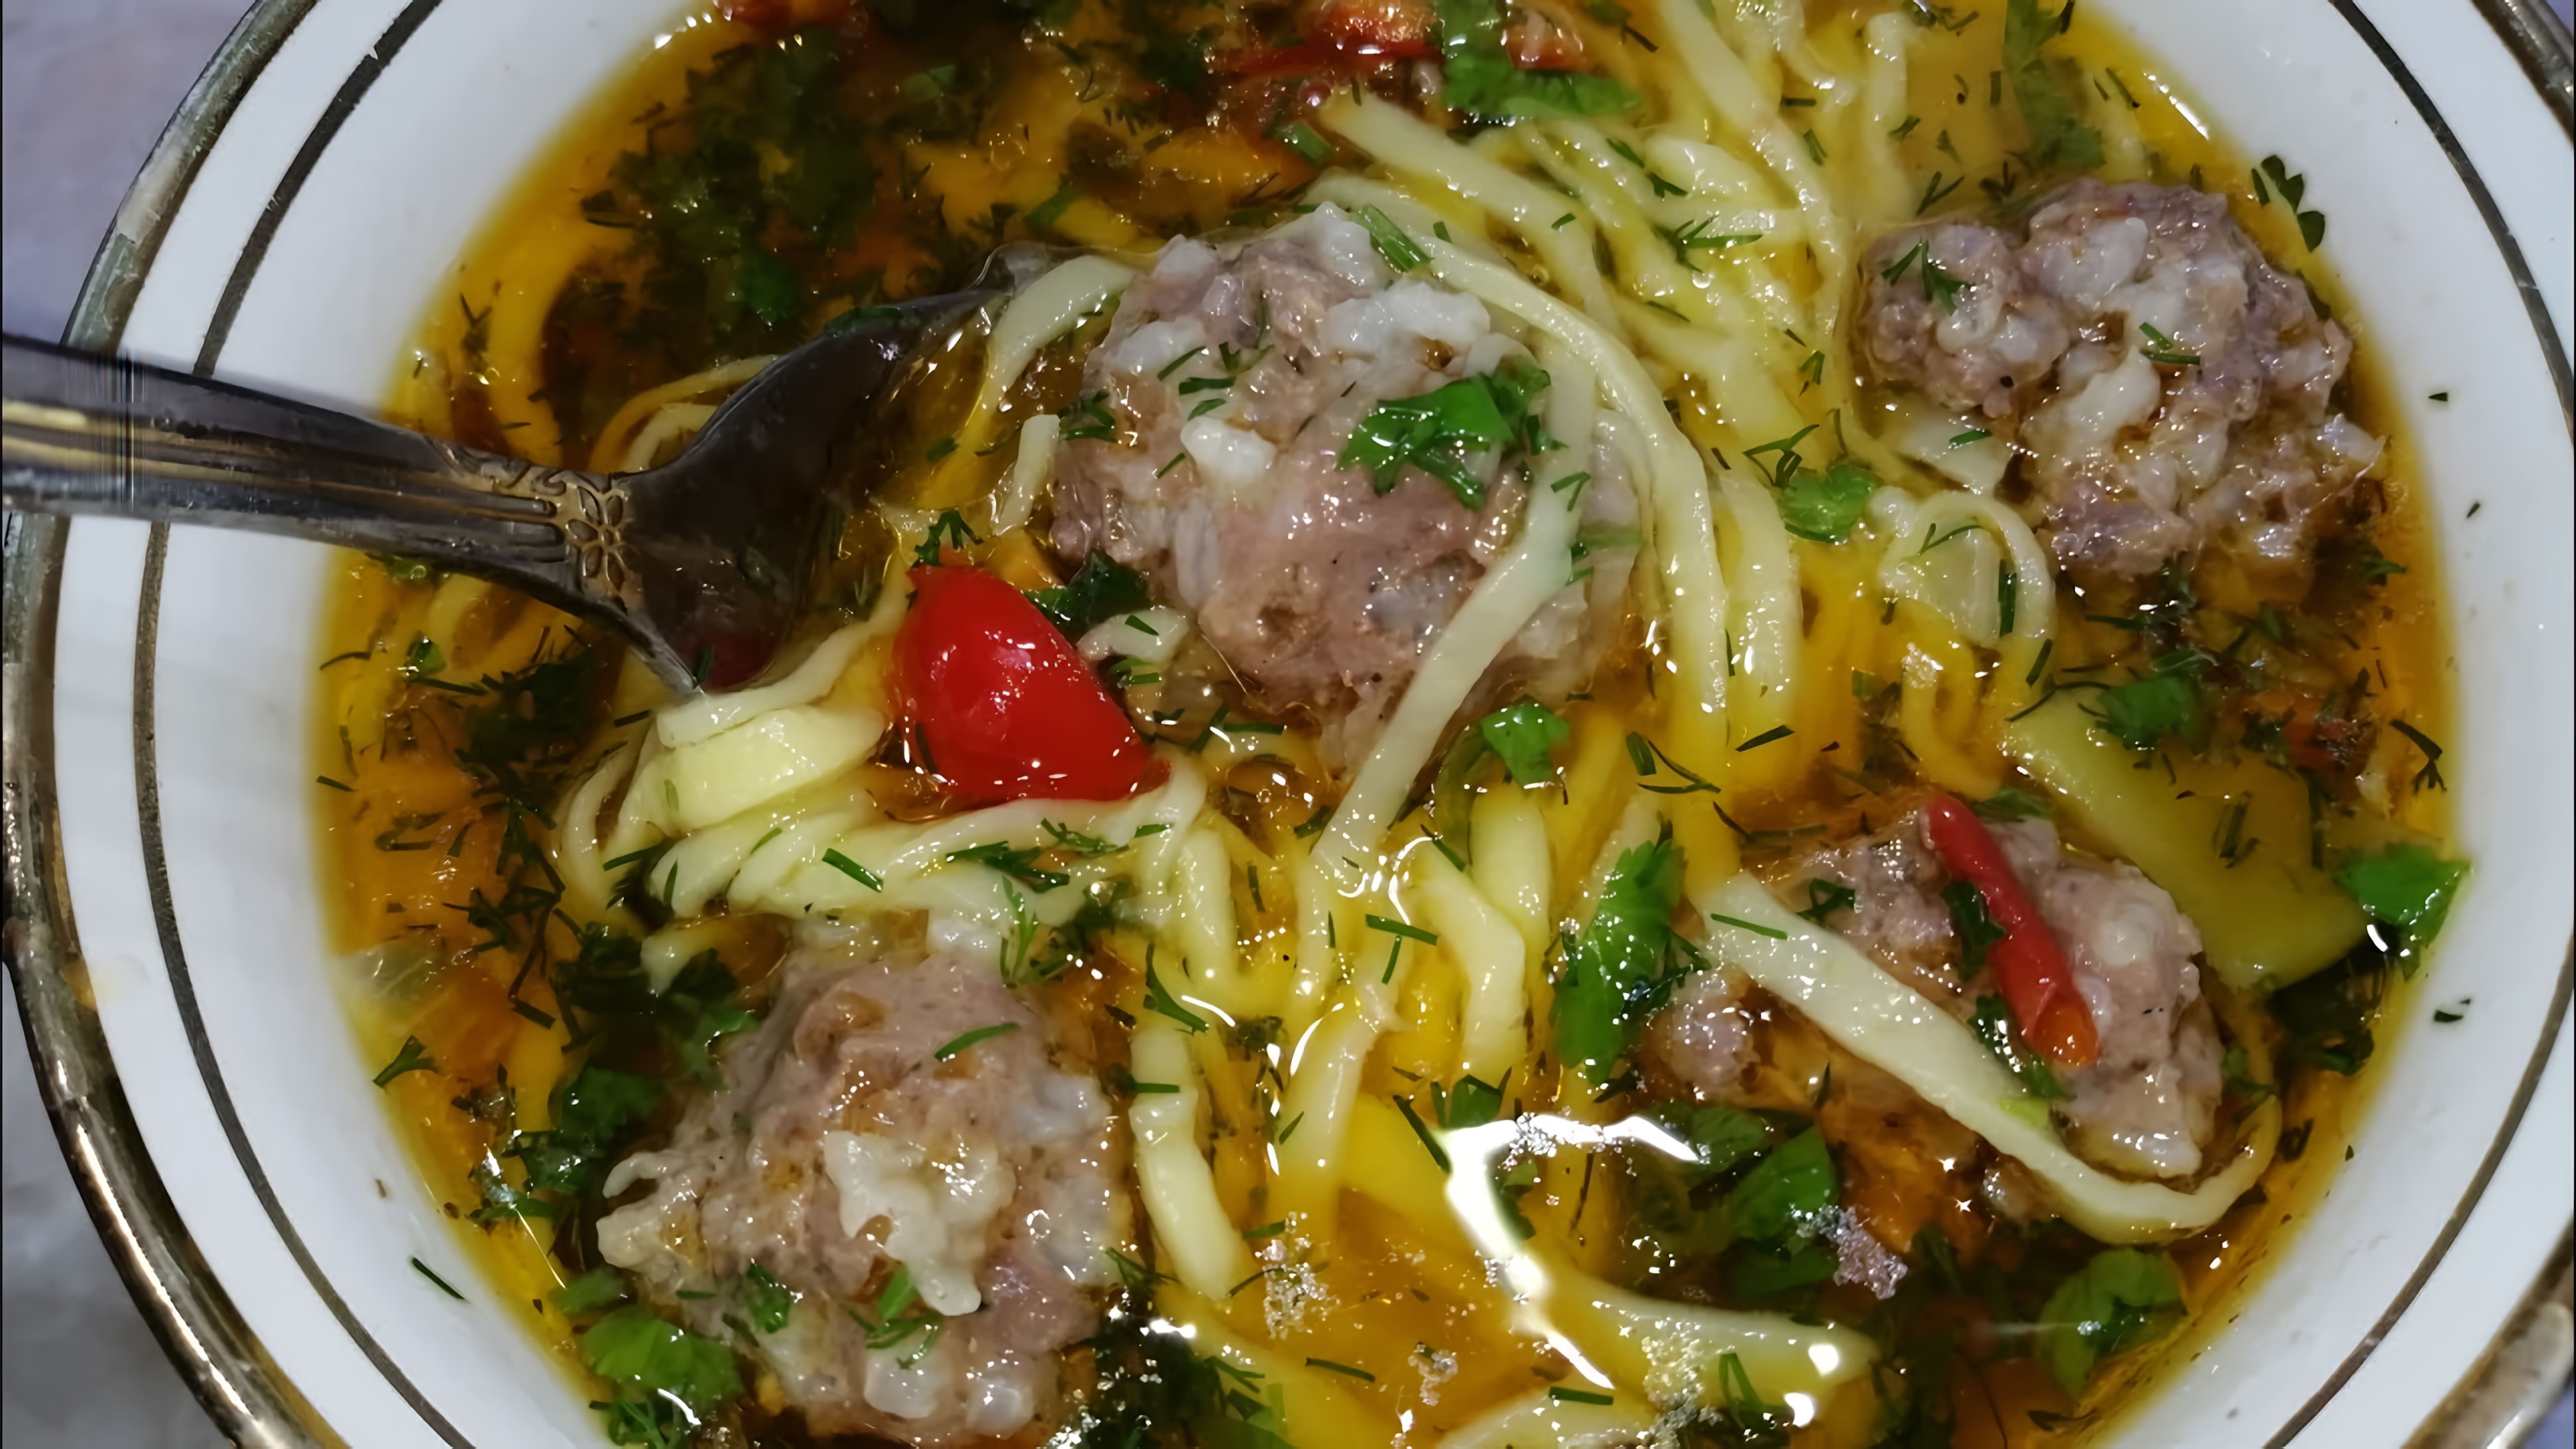 "Узбекский суп Угра Гужа с фрикадельками - это вкусное и сытное блюдо, которое можно приготовить в домашних условиях